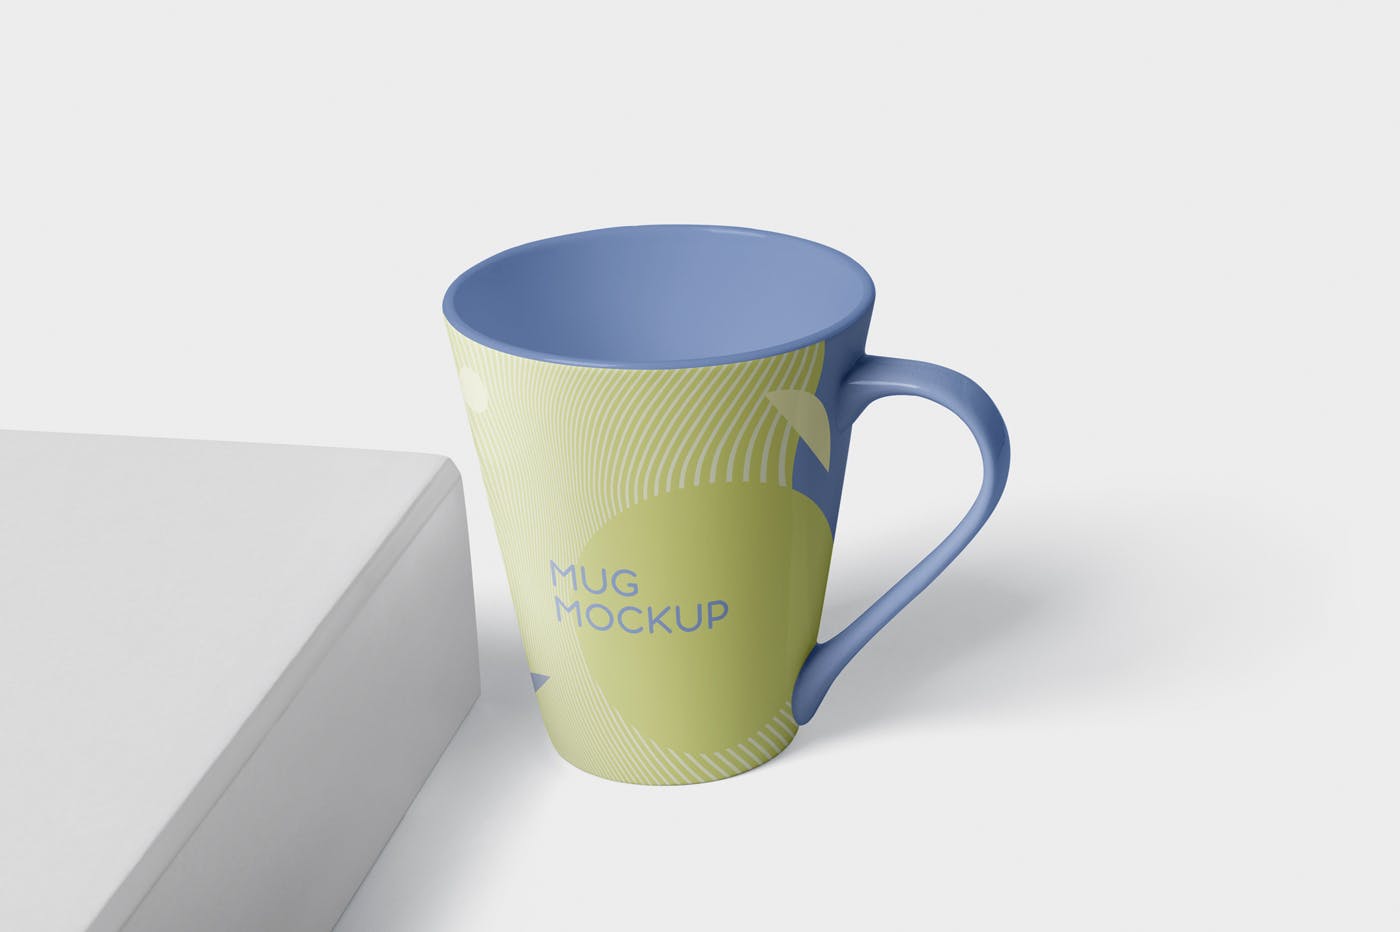 锥形马克杯图案设计素材库精选 Mug Mockup – Cone Shaped插图(3)